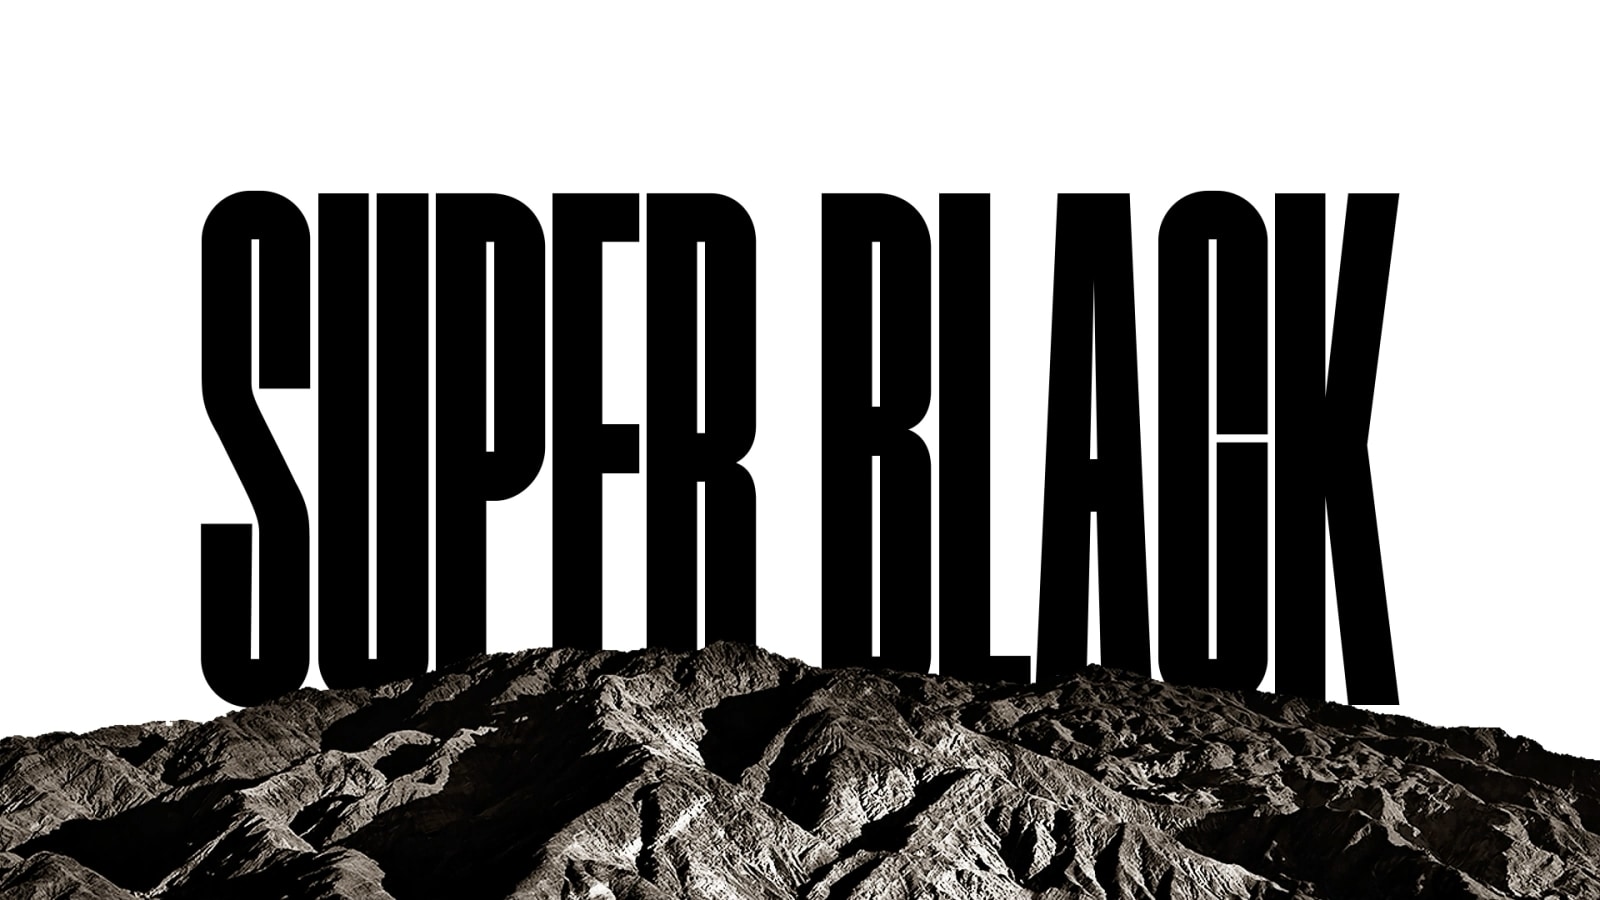 Besede "SUPER BLACK" so prikazane s krepkimi črnimi črkami. Črno gorsko okolje z ostro ločljivostjo nato prekrije črke, prikazujejo pa tudi vas in peščene sipine. Črna kopija izgine za črnim nebom.